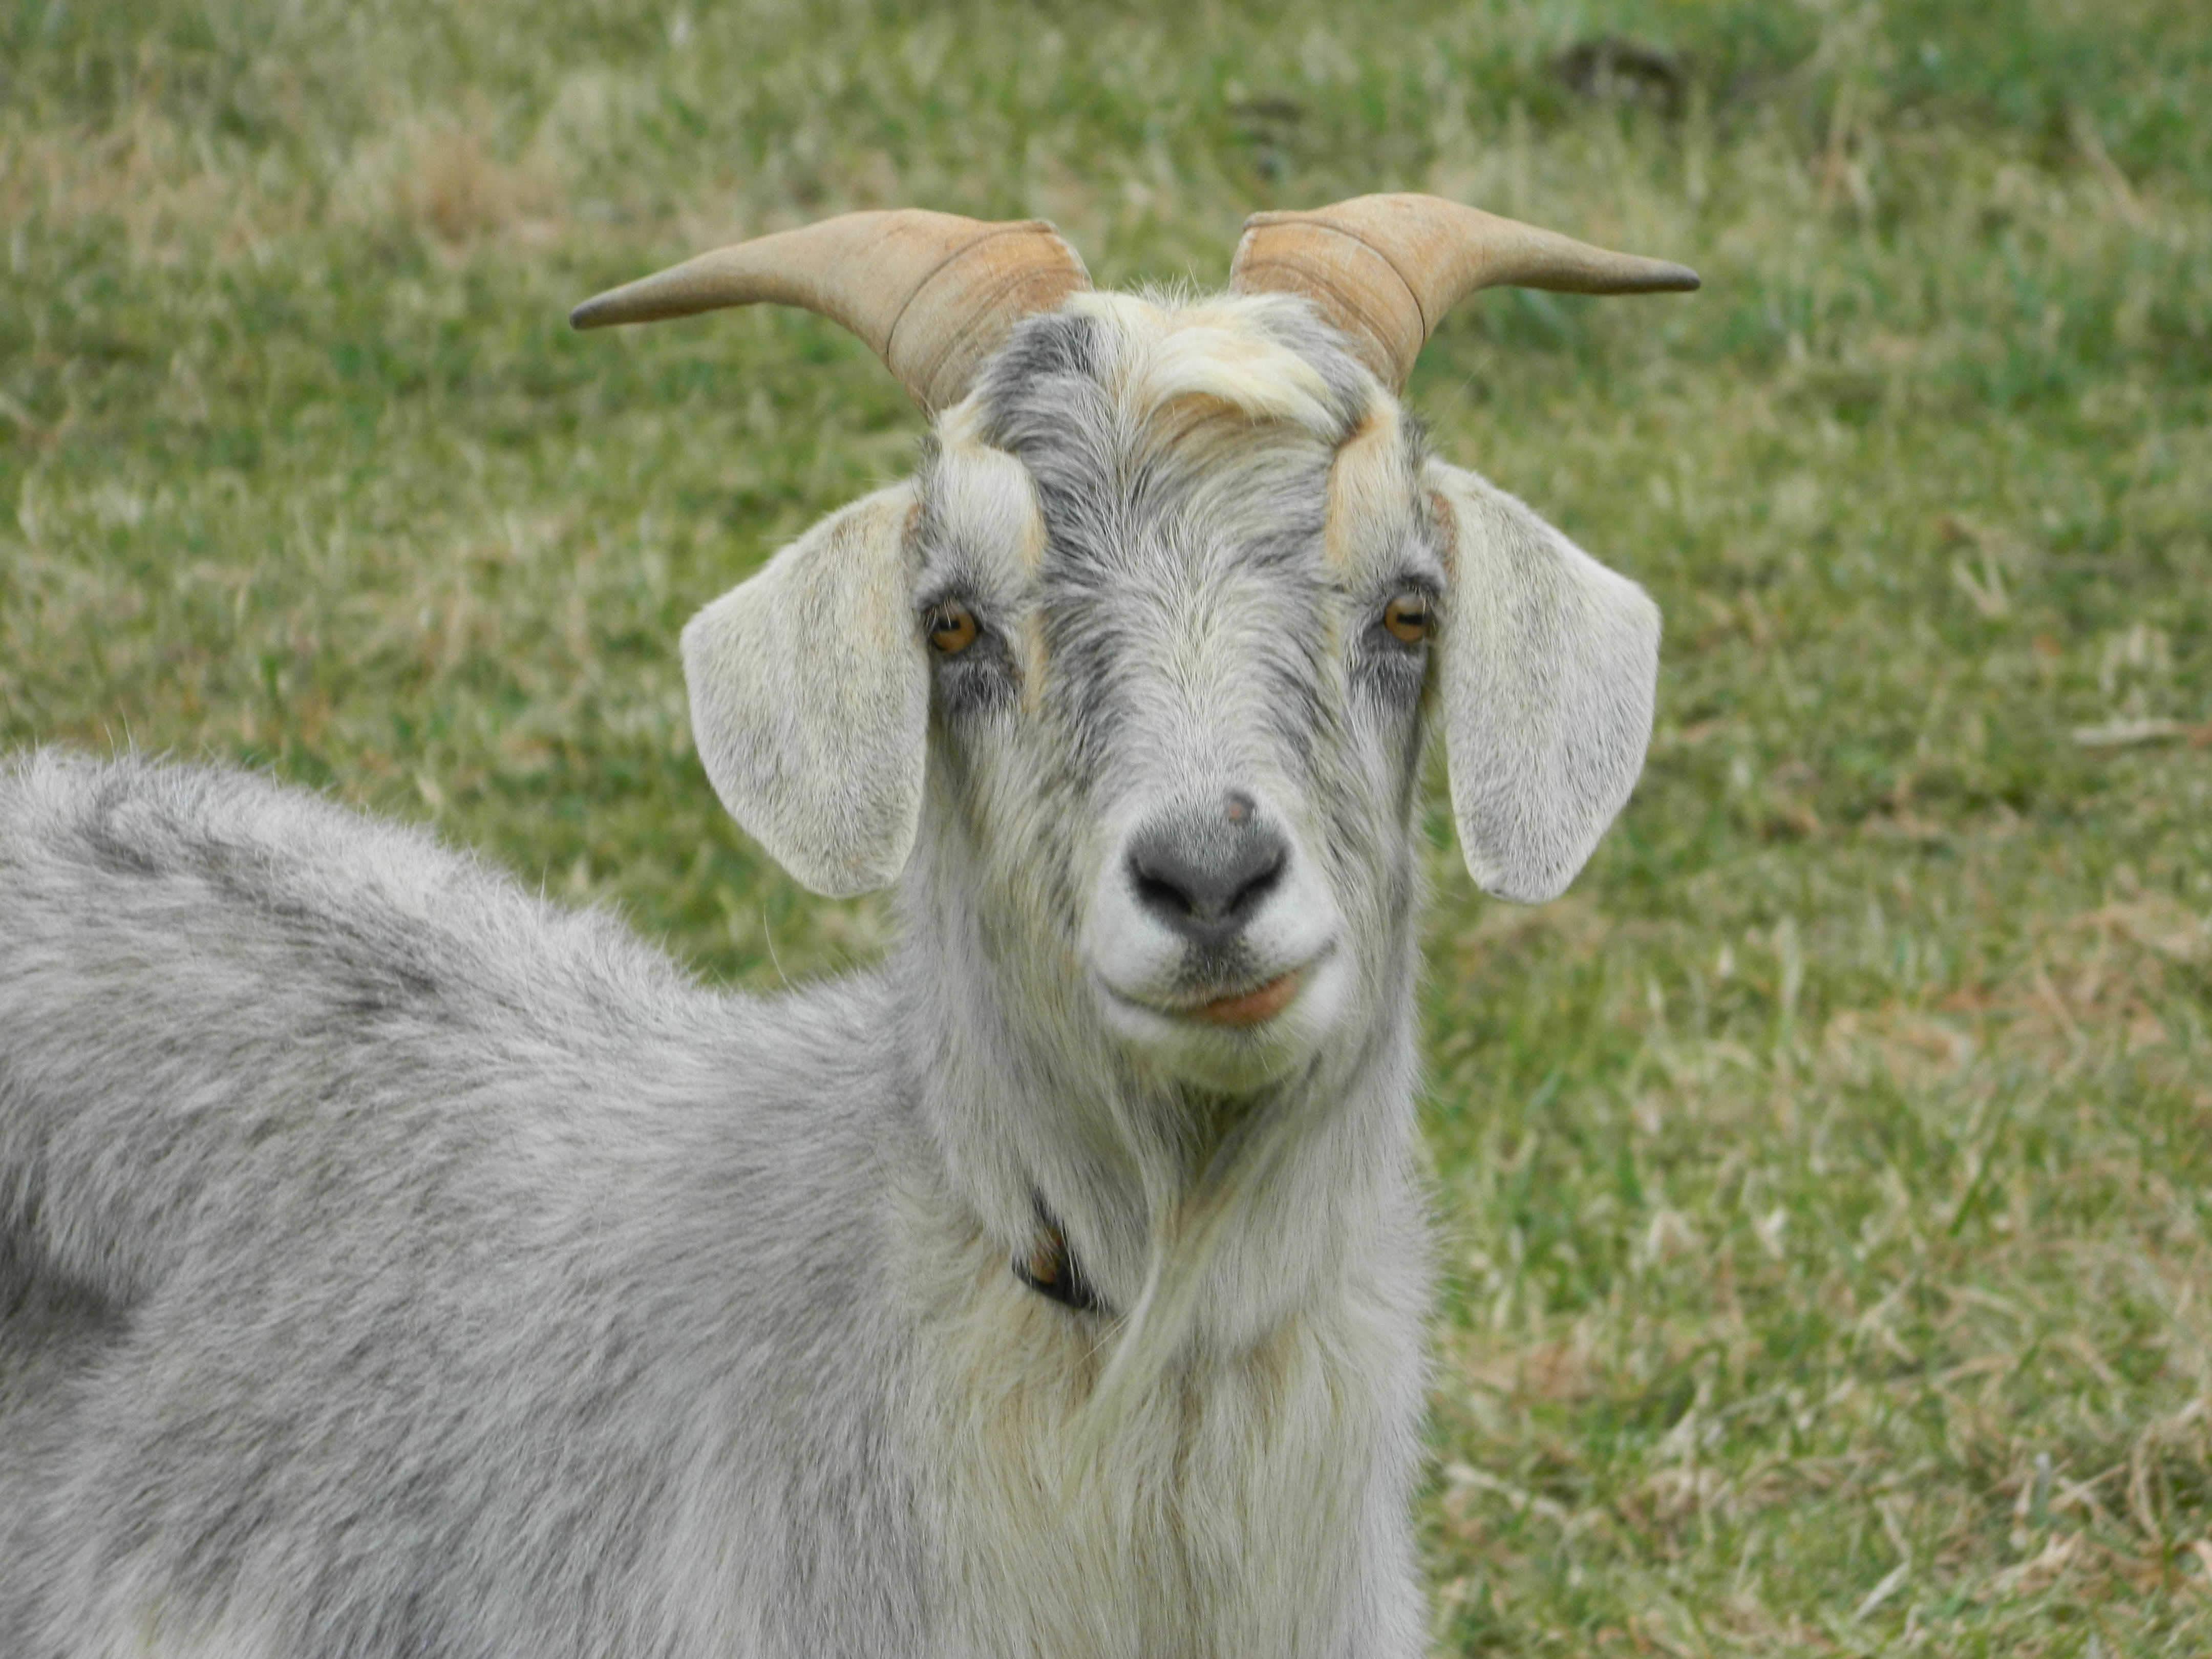 Petey goat smile smiling